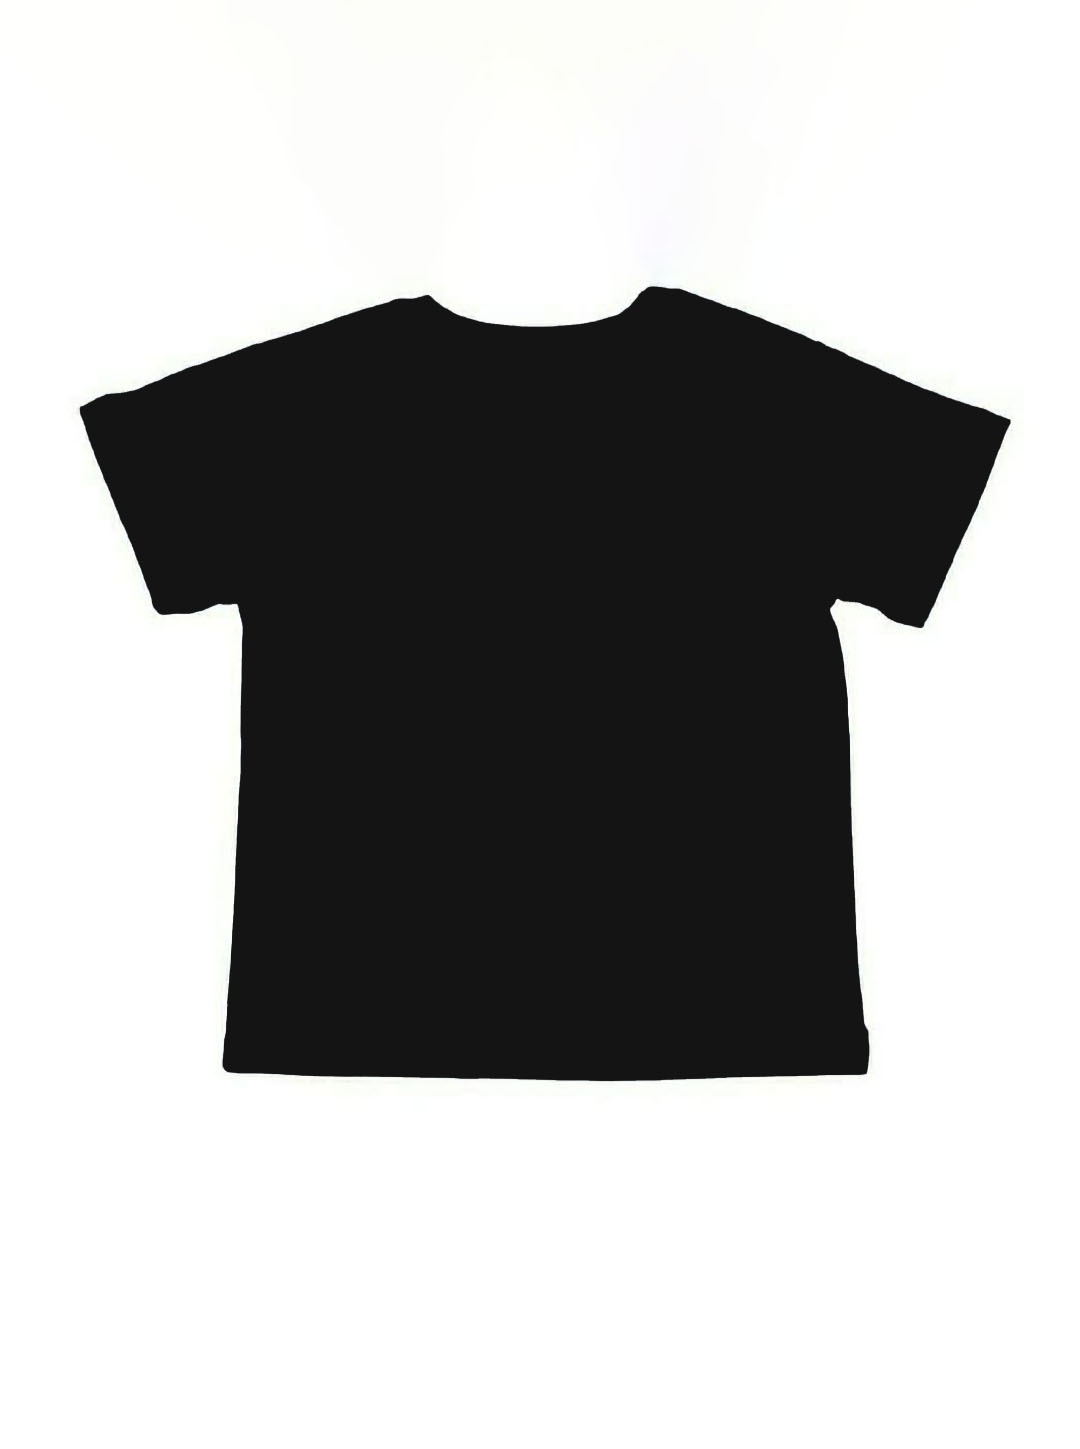 Чорна футболка для фізкультури Фламінго 300-103 - ціна